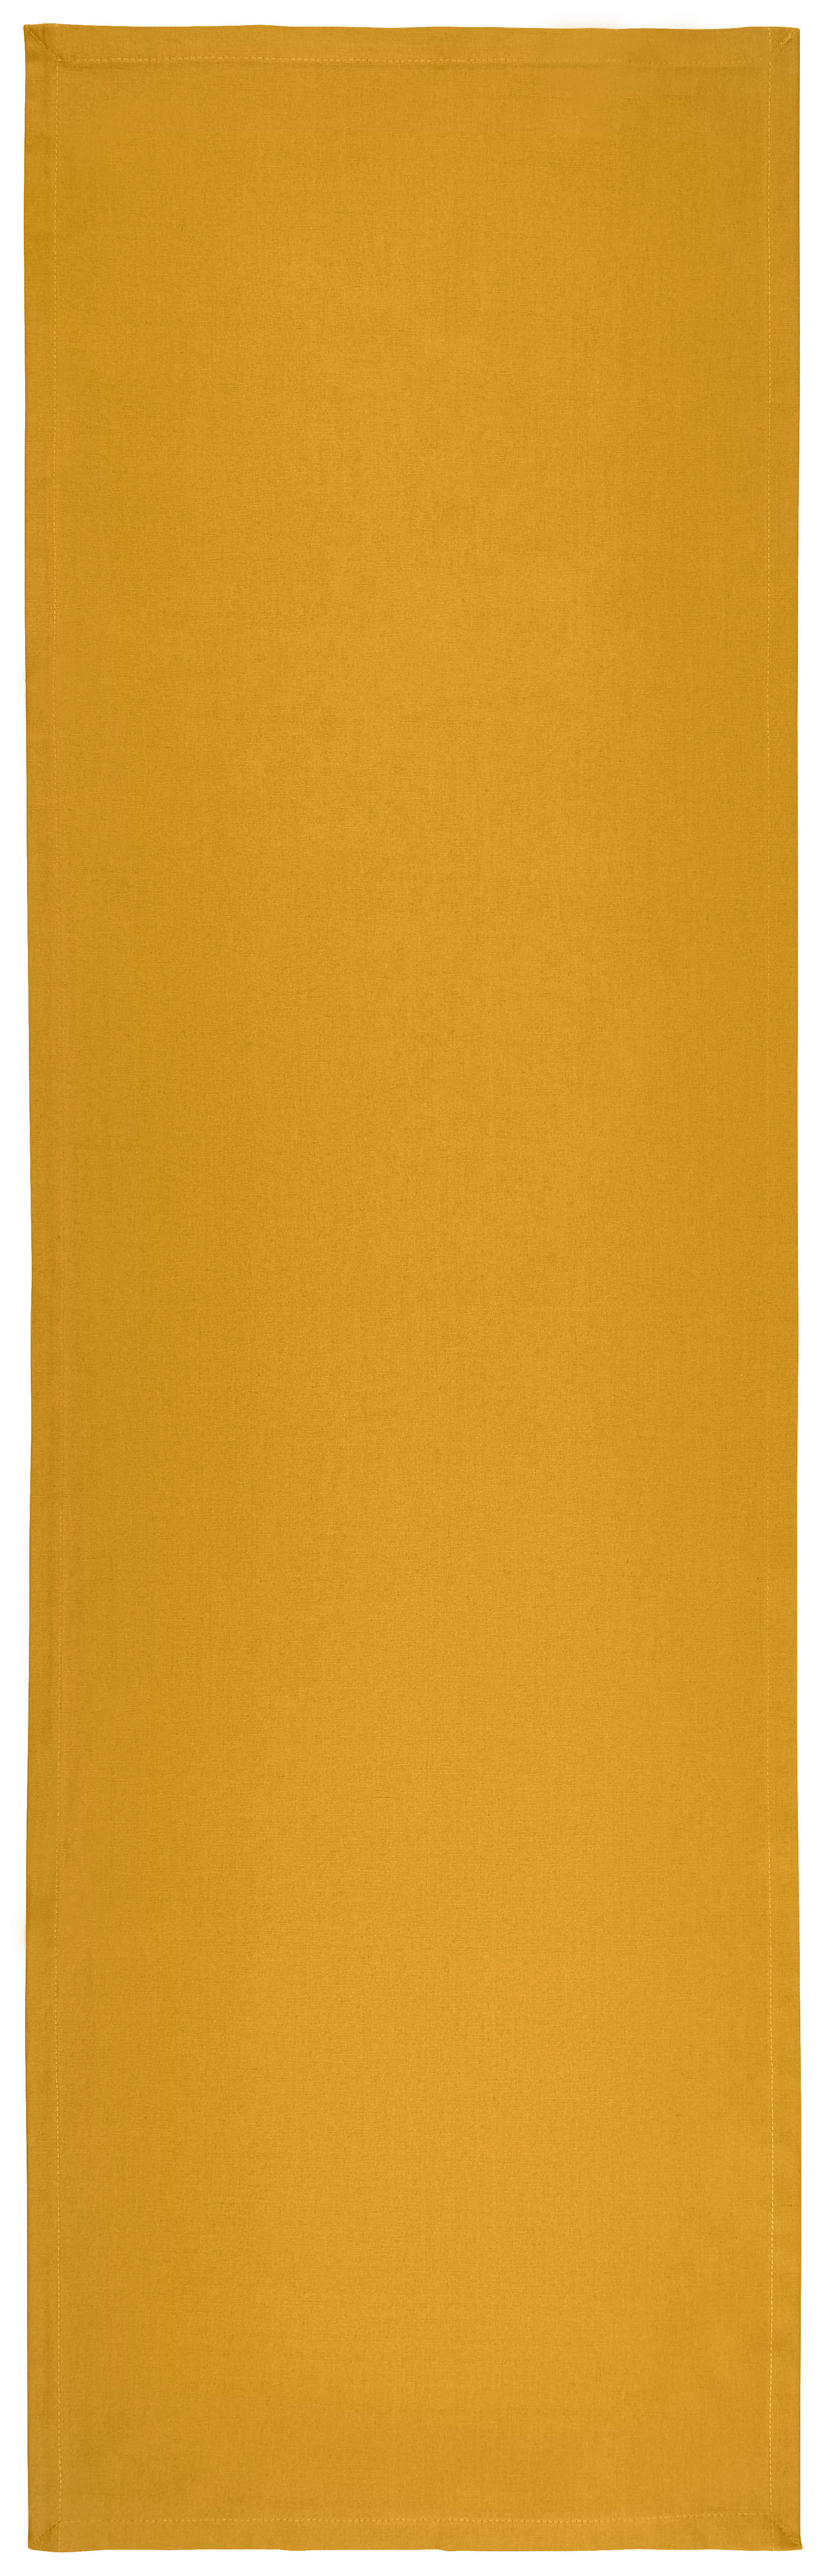 TISCHLÄUFER 45/150 cm   - Gelb, Basics, Textil (45/150cm) - Novel